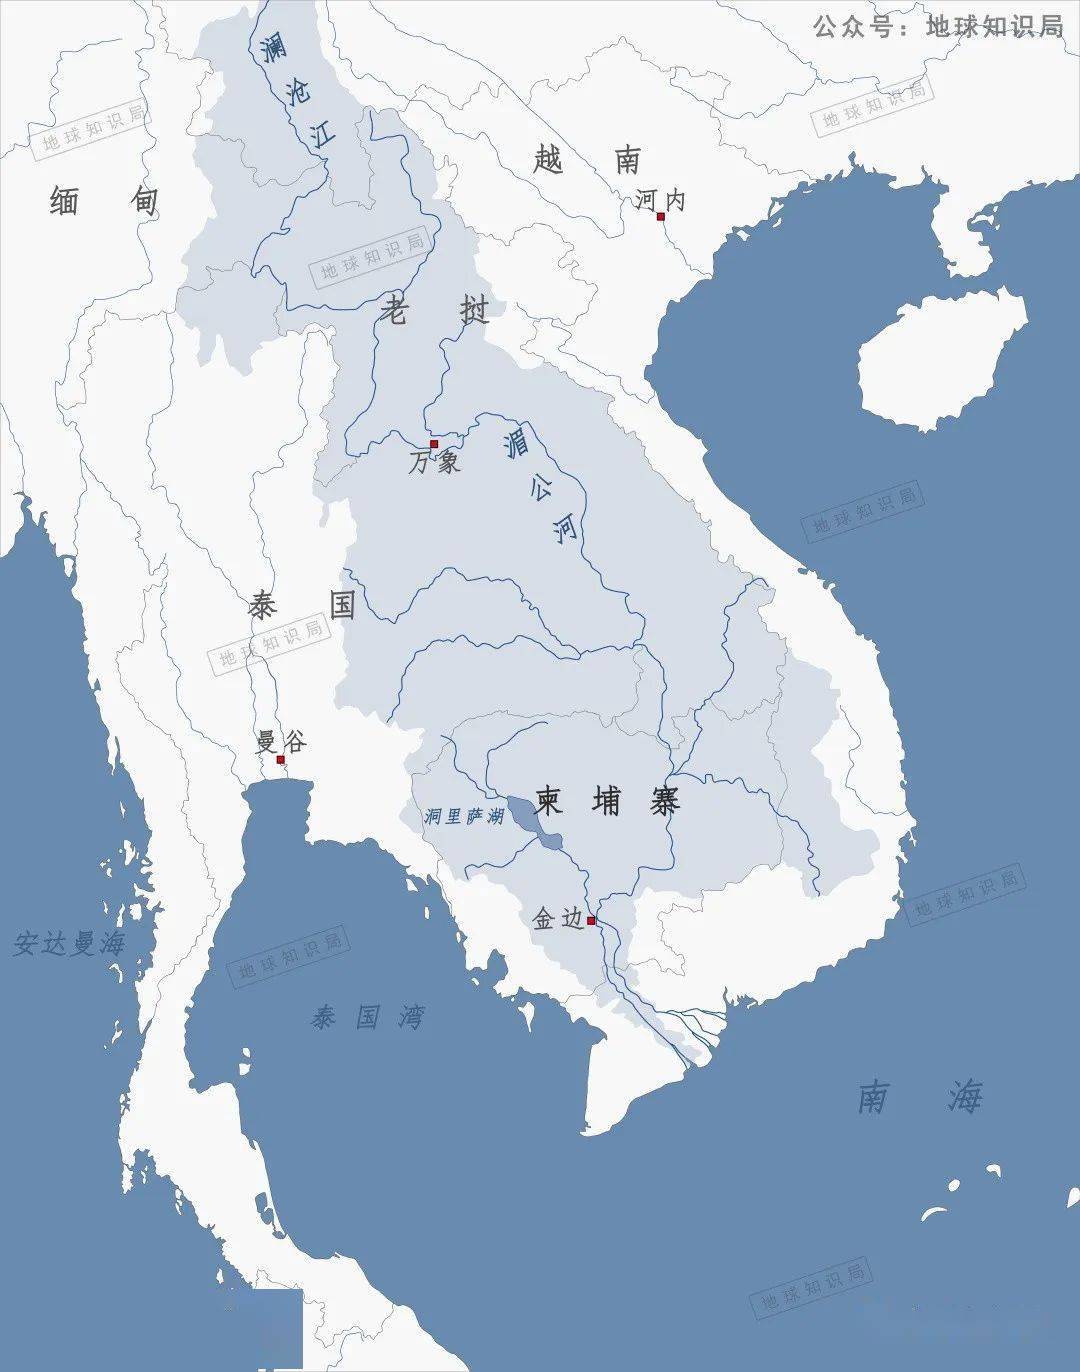 流经面积广,但支流大多短小▼湄公河是东南亚第一长河且弯道较多发源